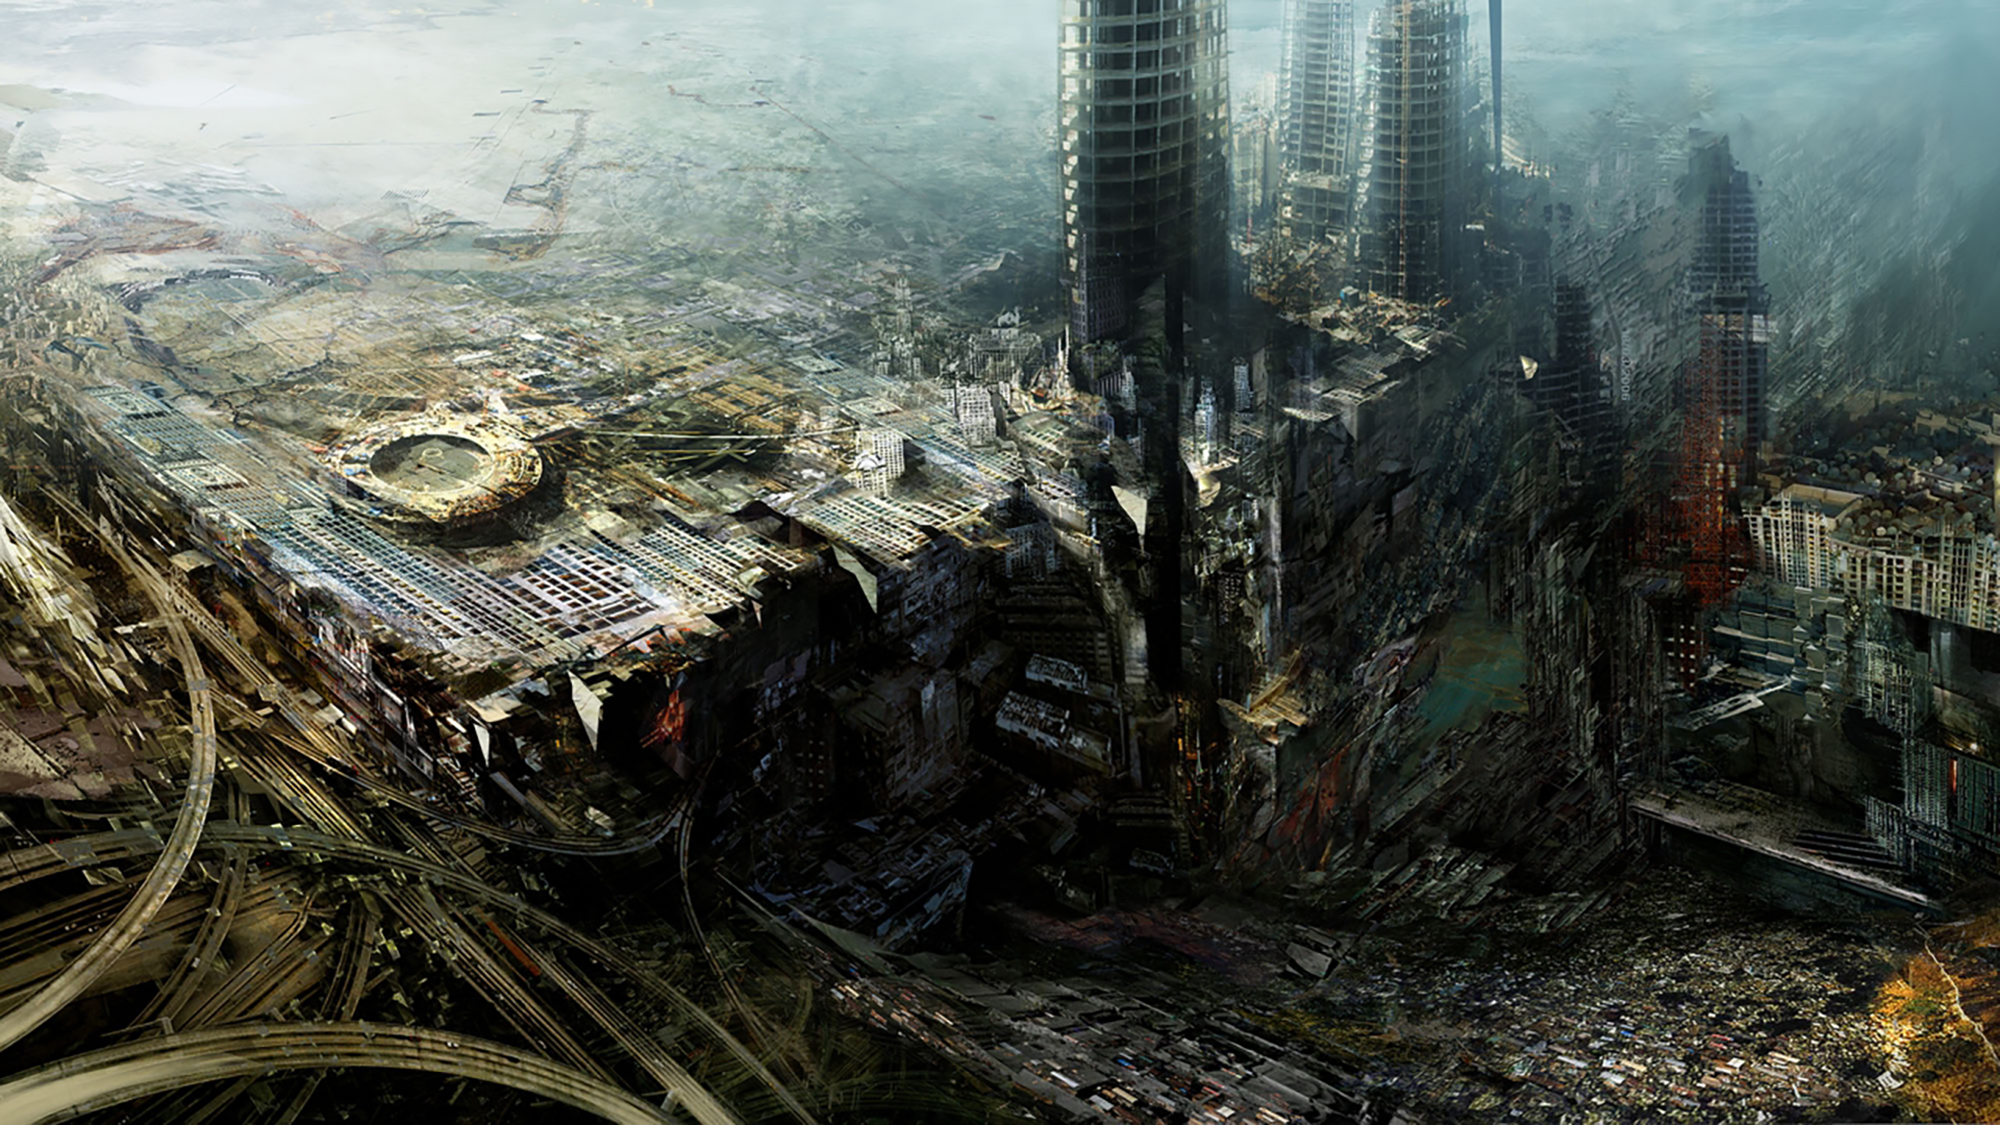 Разрушенные цивилизации